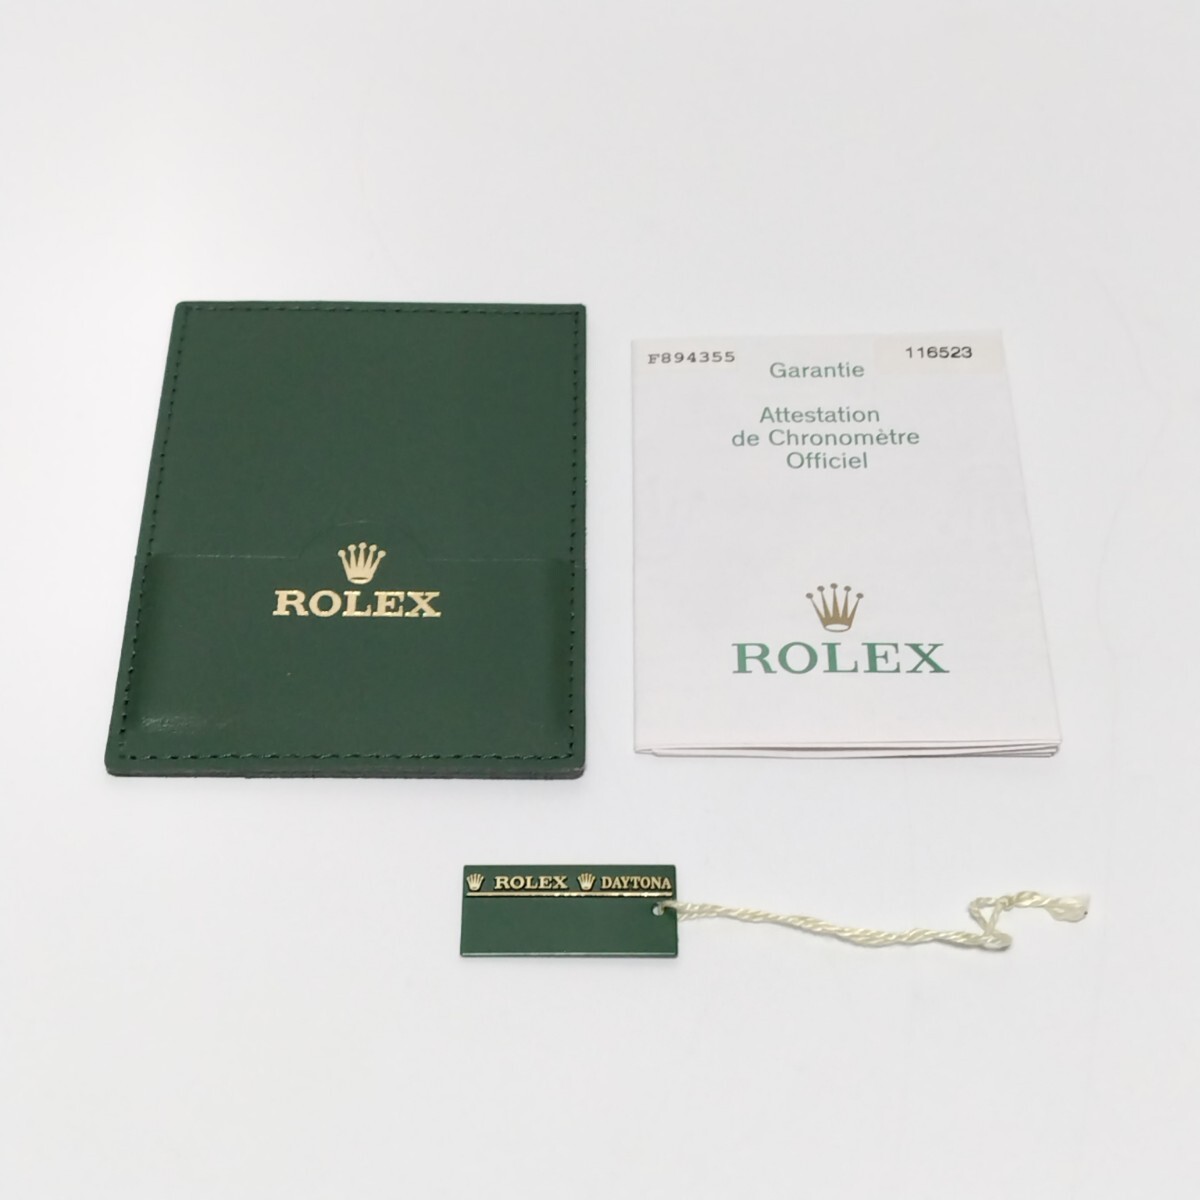 ROLEX ロレックス ギャランティ 116523 保証書 カードケース デイトナ DAYTONA A-52301の画像1